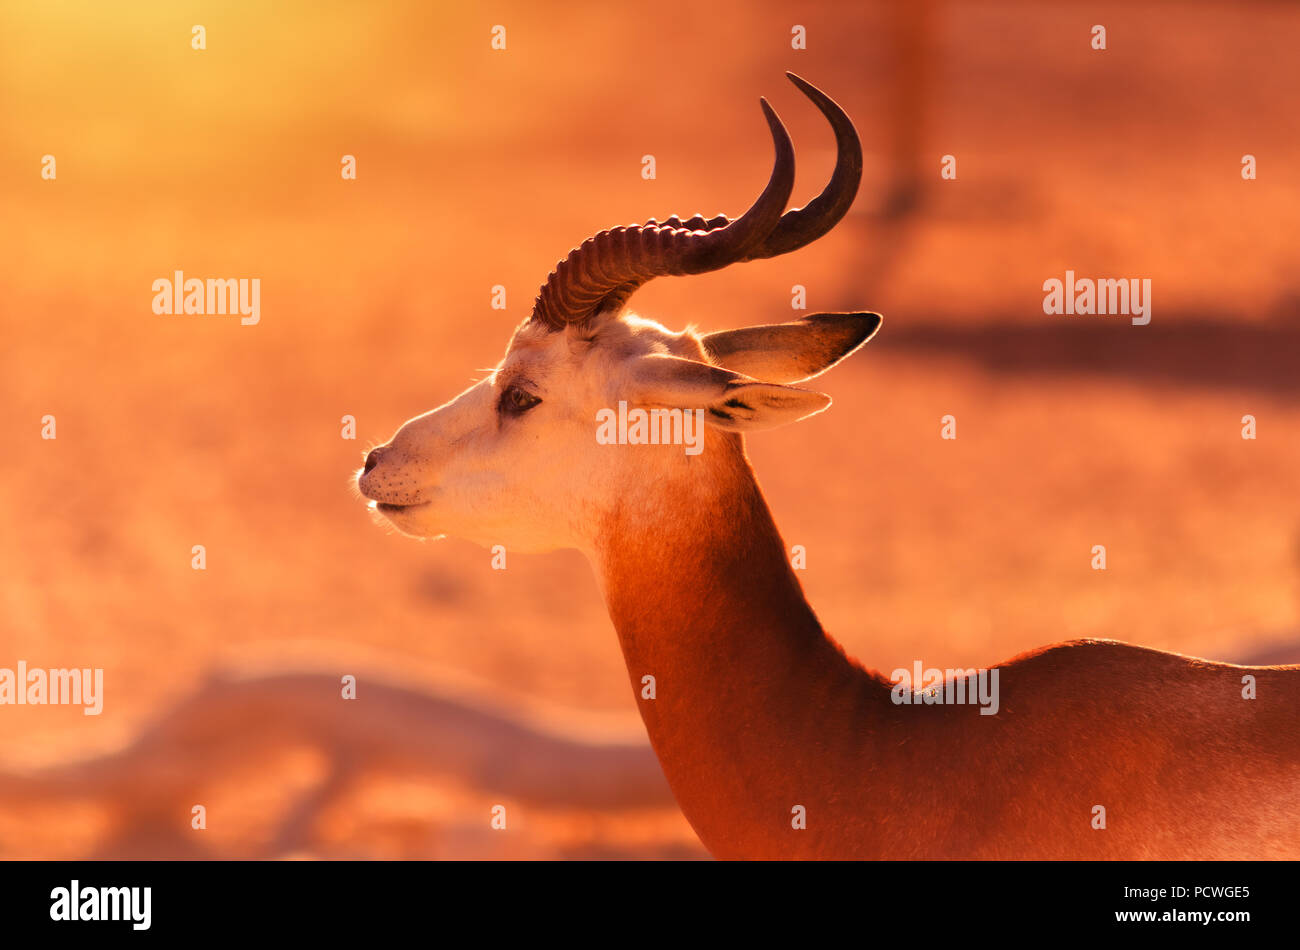 Die dama Gazelle, addra Gazelle, oder mhorr Gazelle wohnen auf natürlichen Lebensraum in Al Ain Zoo. Stockfoto